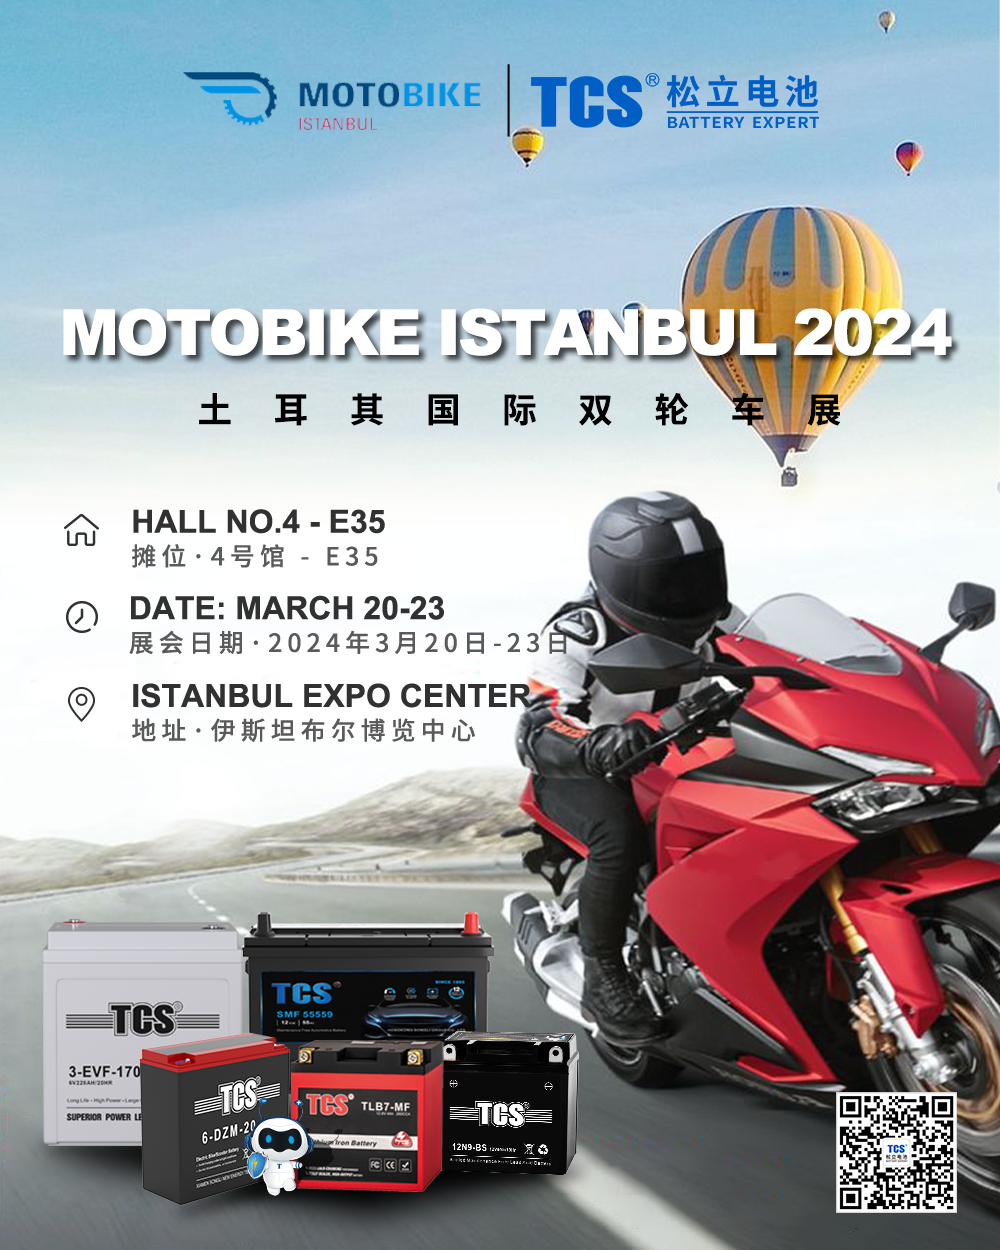 TCS akkumulátoros motorkerékpár Isztambul 2024